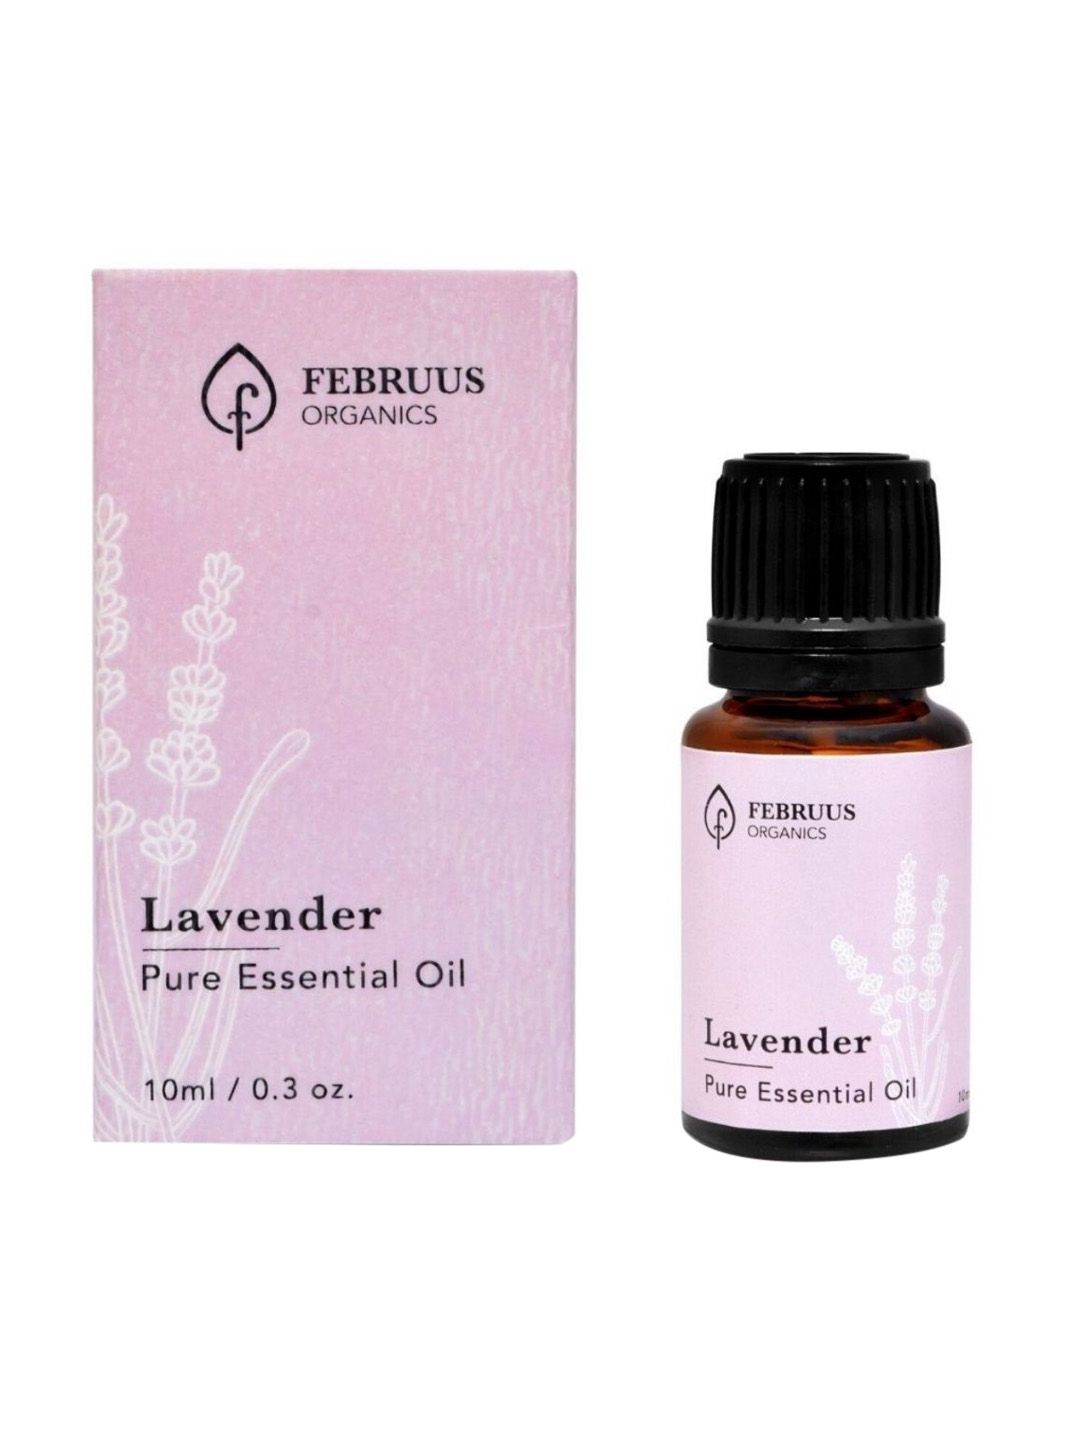 Februus Organics Lavender Essential Oil 10ml Price in India